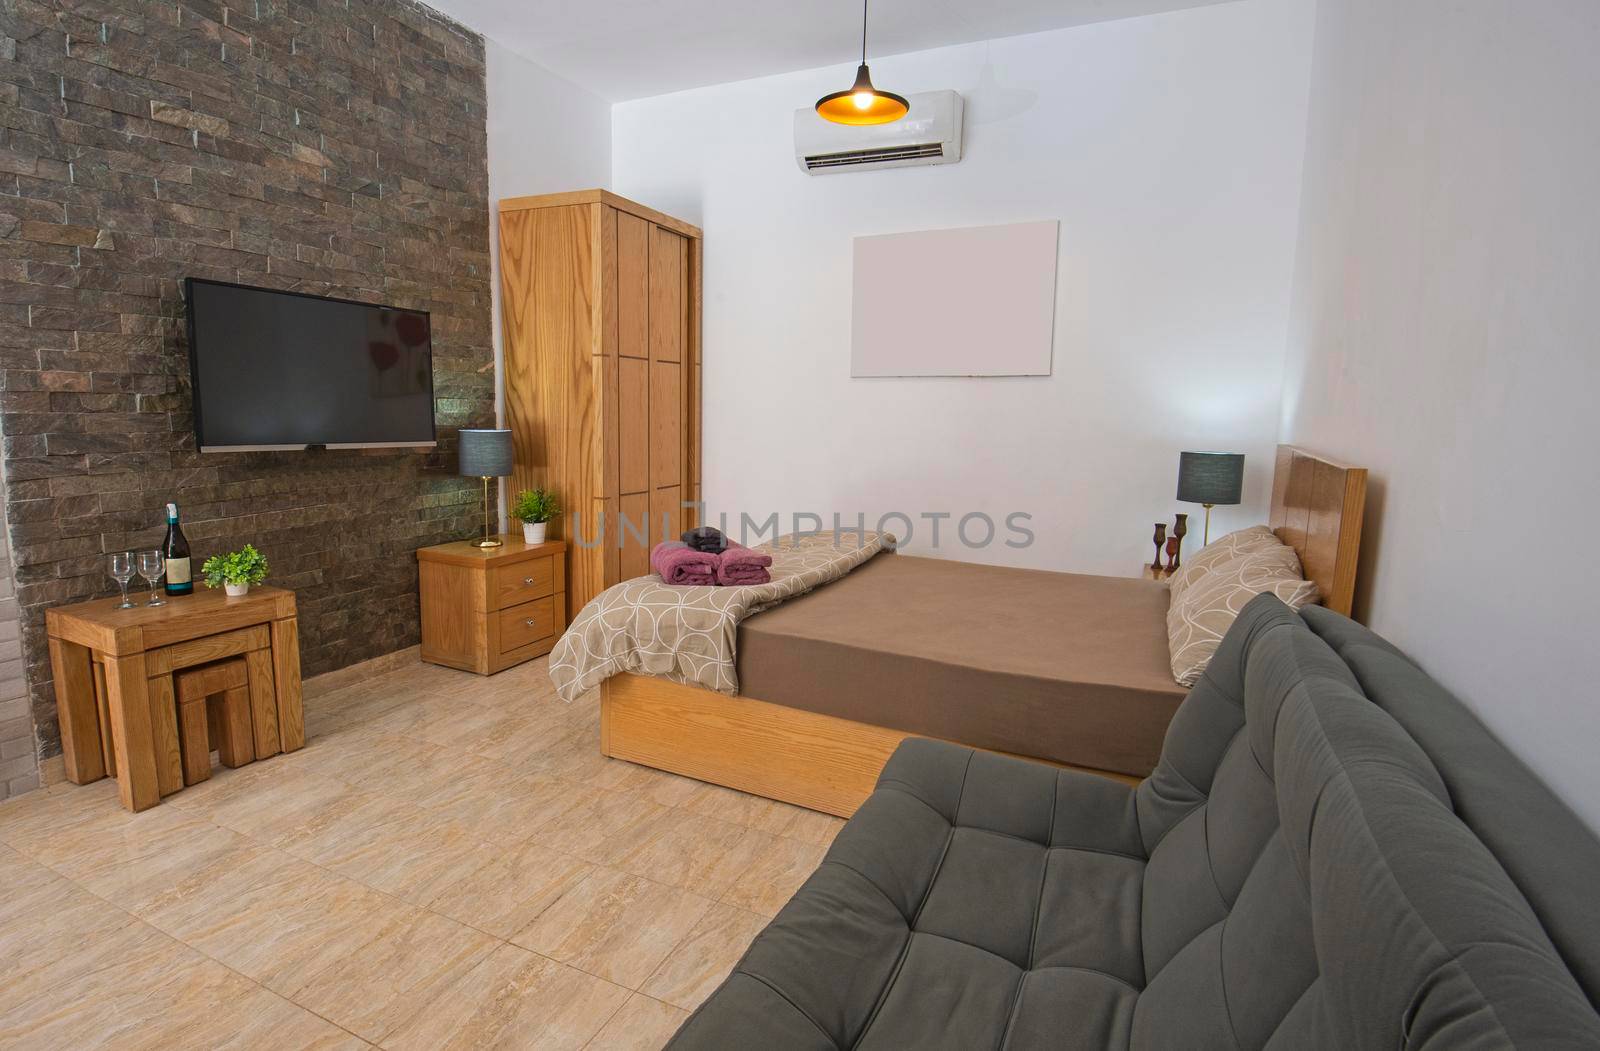 Interior design decor showing modern bedroom area in open plan luxury studio apartment showroom